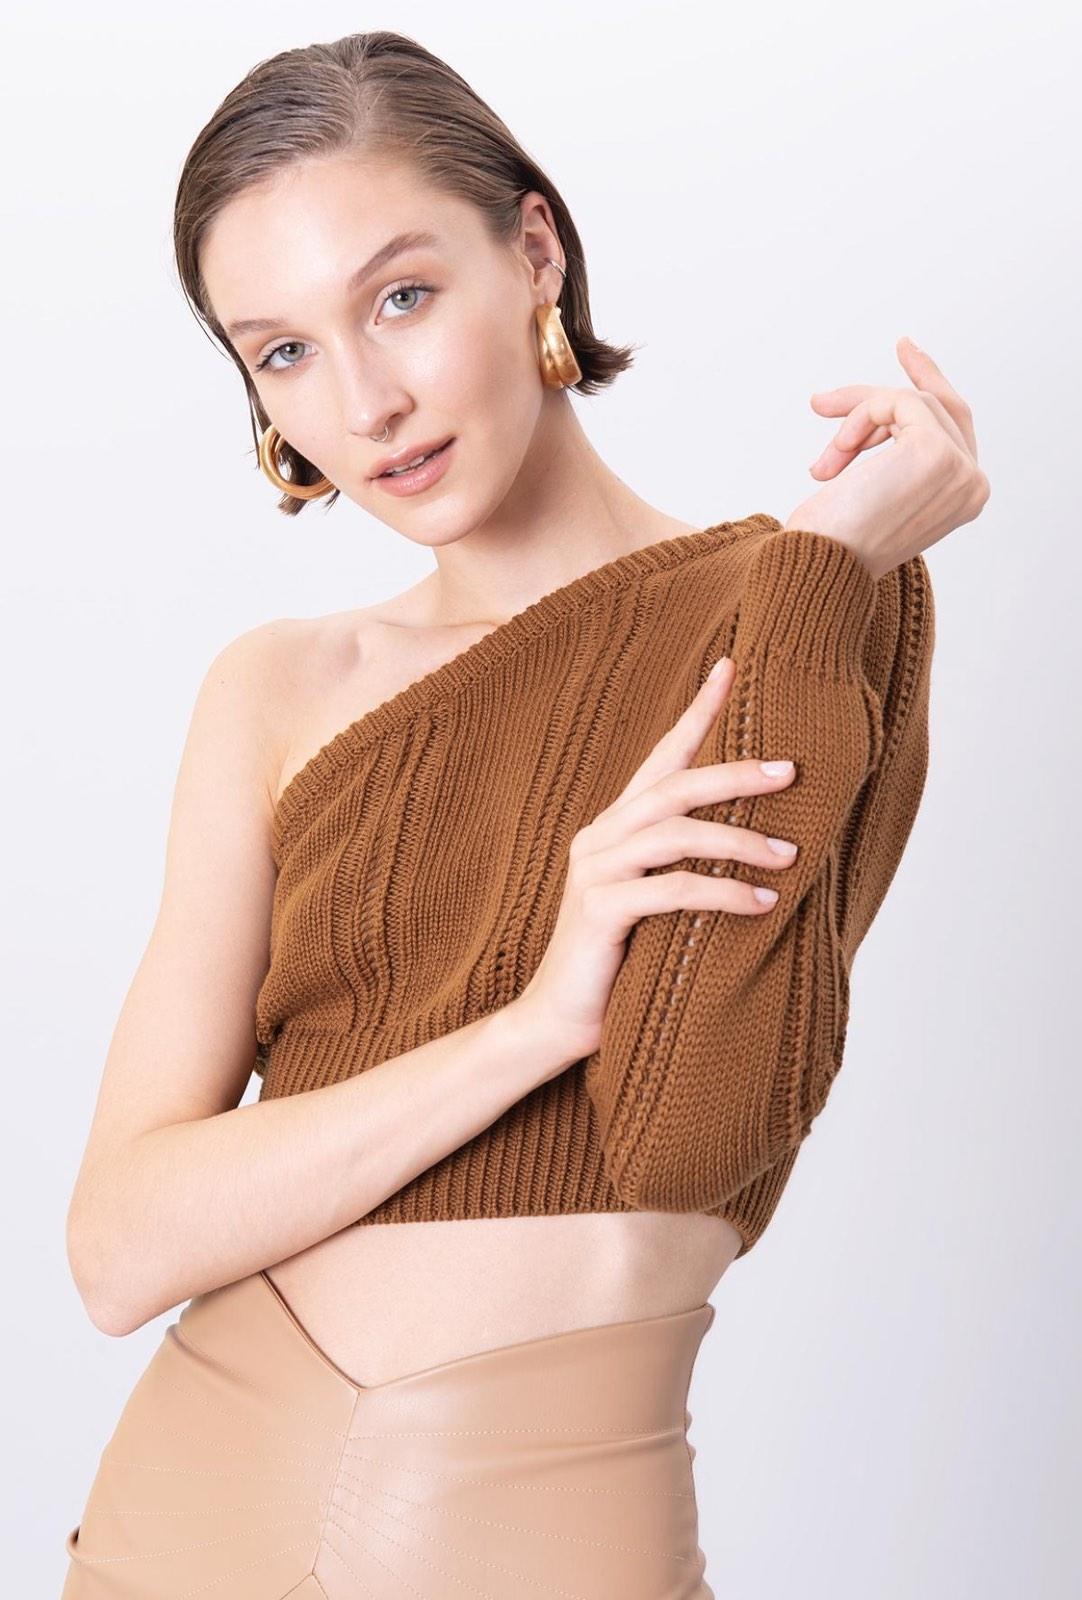 Дамски пуловер BELLA  https://bvseductive.com/products/дамски-пуловер-bella  100% акрил атрактивен къс дамски пуловер с един ръкав в кафяв цвят тренди предложение за вашата визия